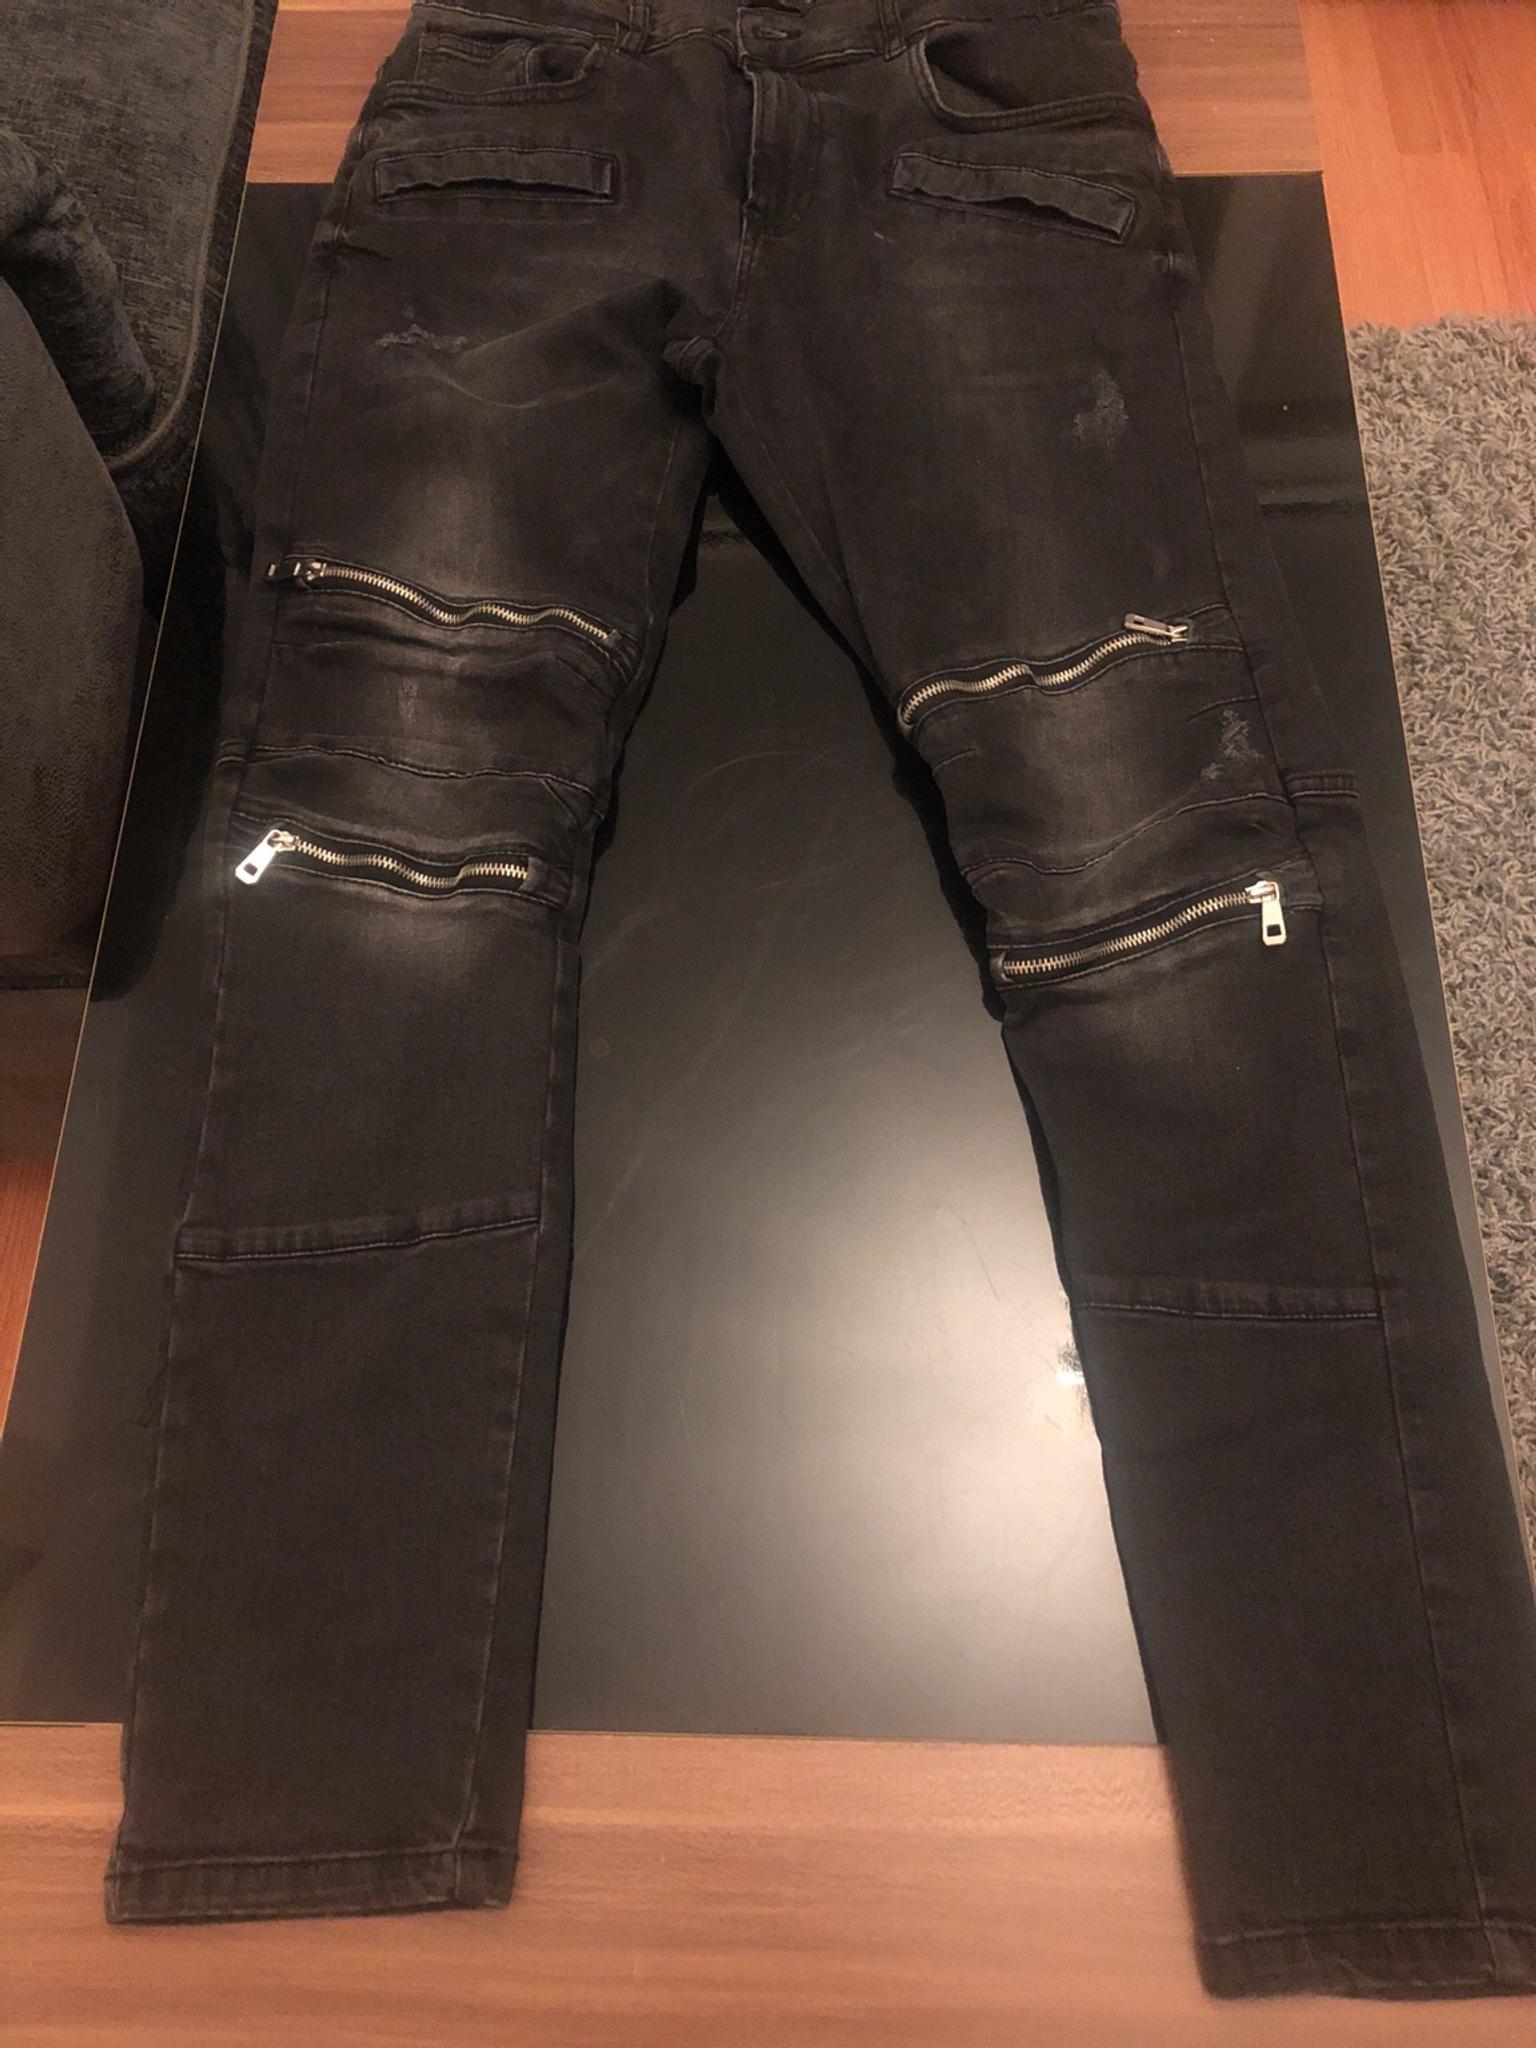 zara men's jeans with zips